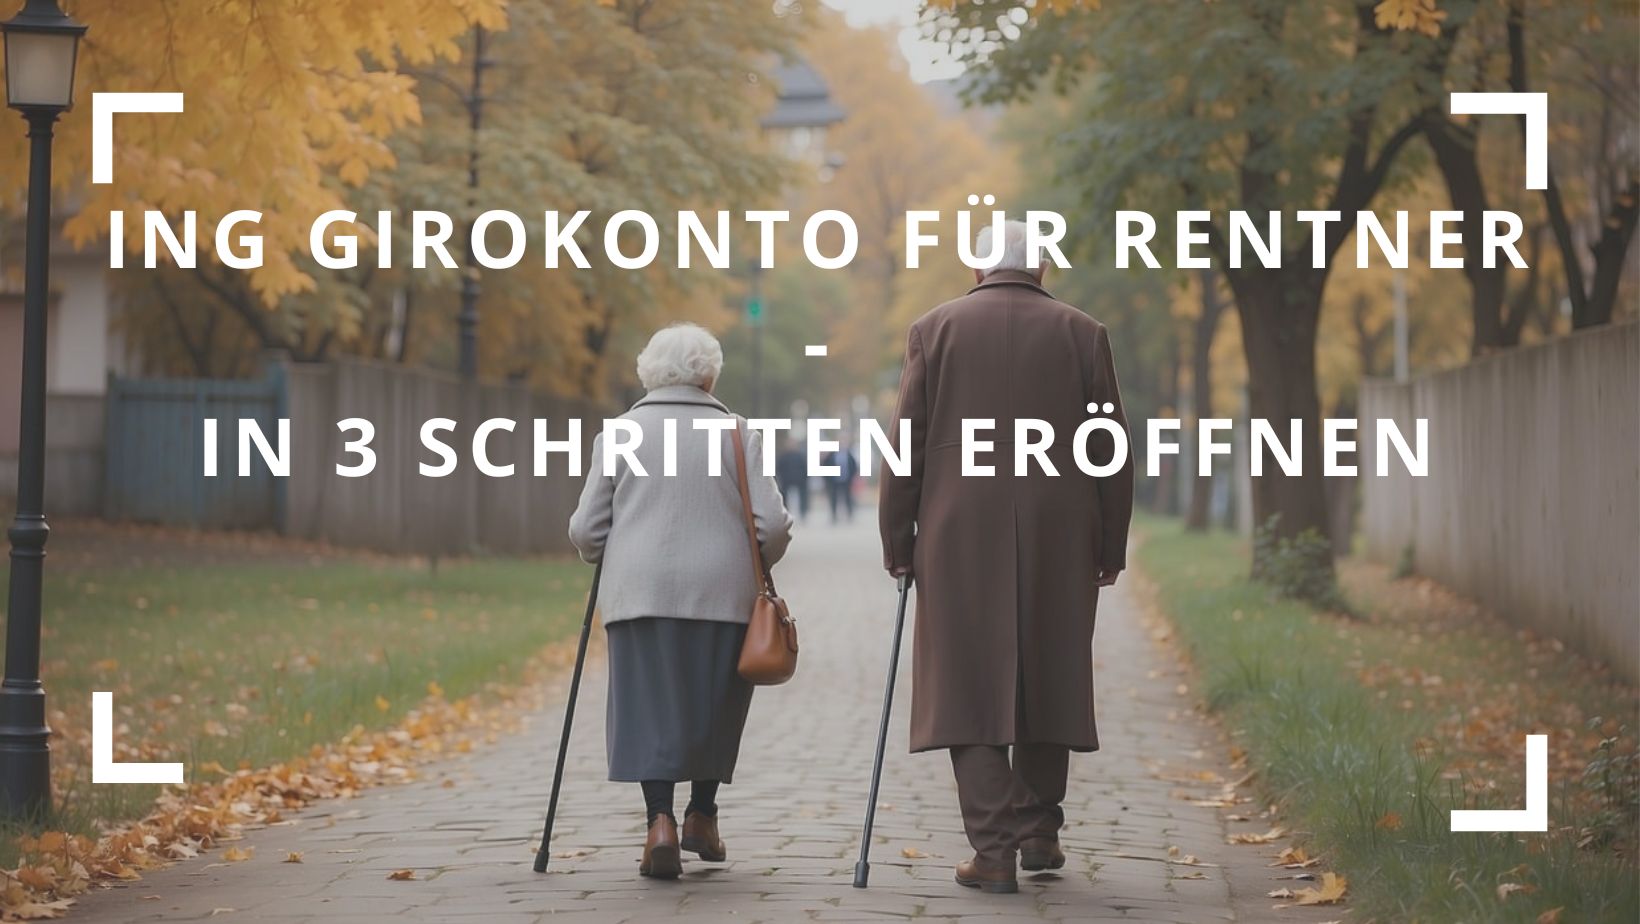 Titelbild zum Beitrag: "ING Girokonto für Rentner - in 3 Schritten eröffnen"